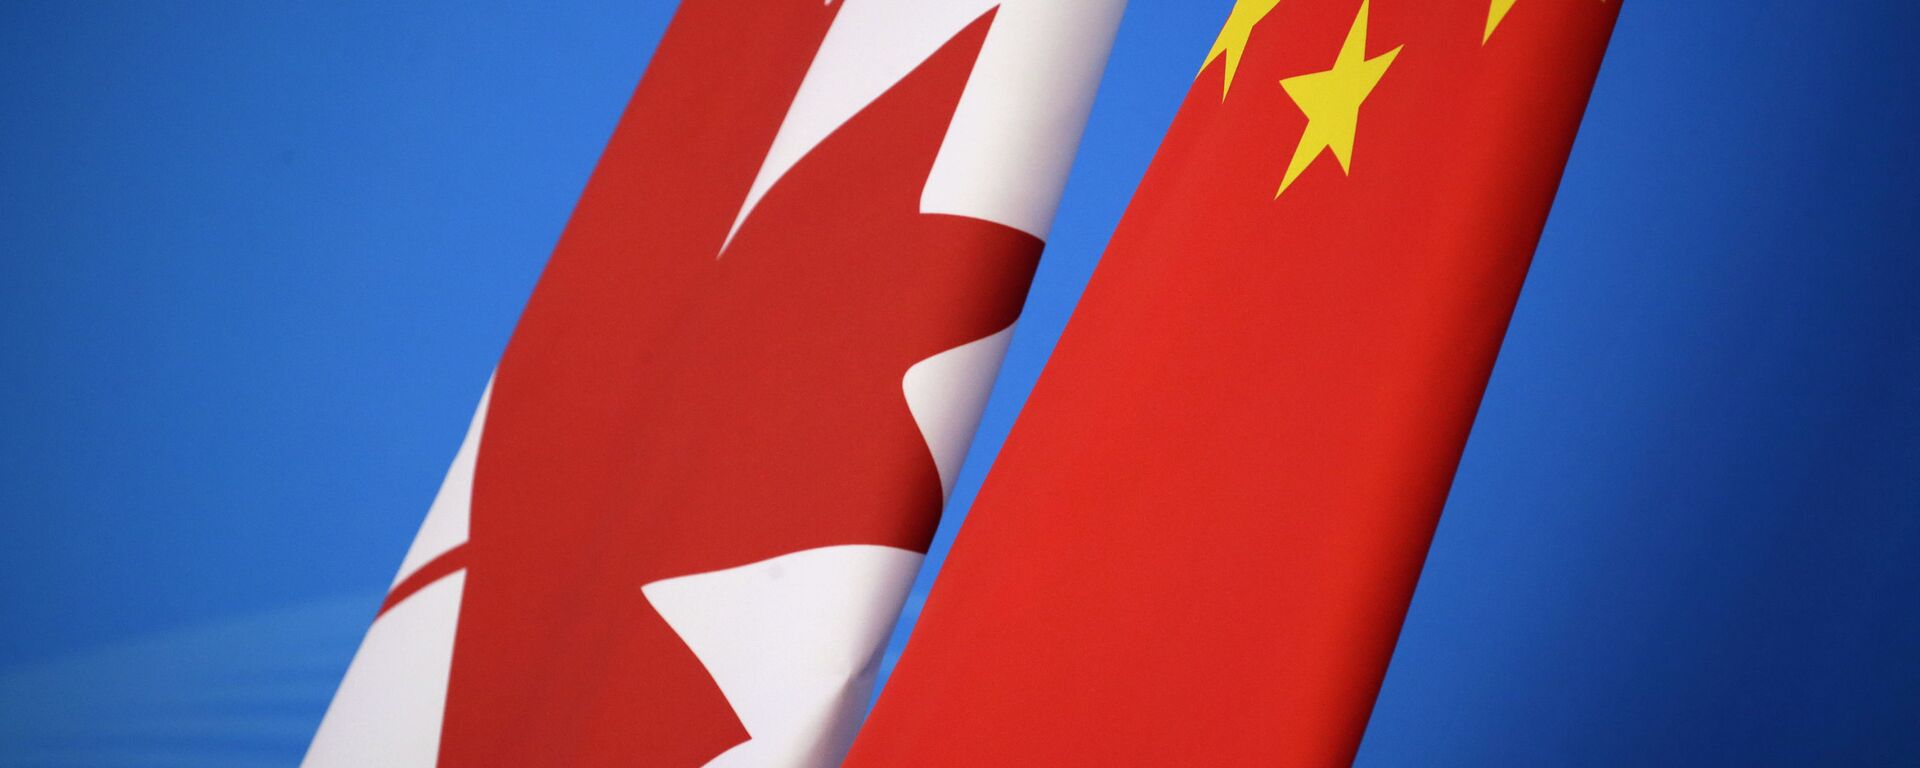 علم كندا و الصين  - سبوتنيك عربي, 1920, 31.01.2021